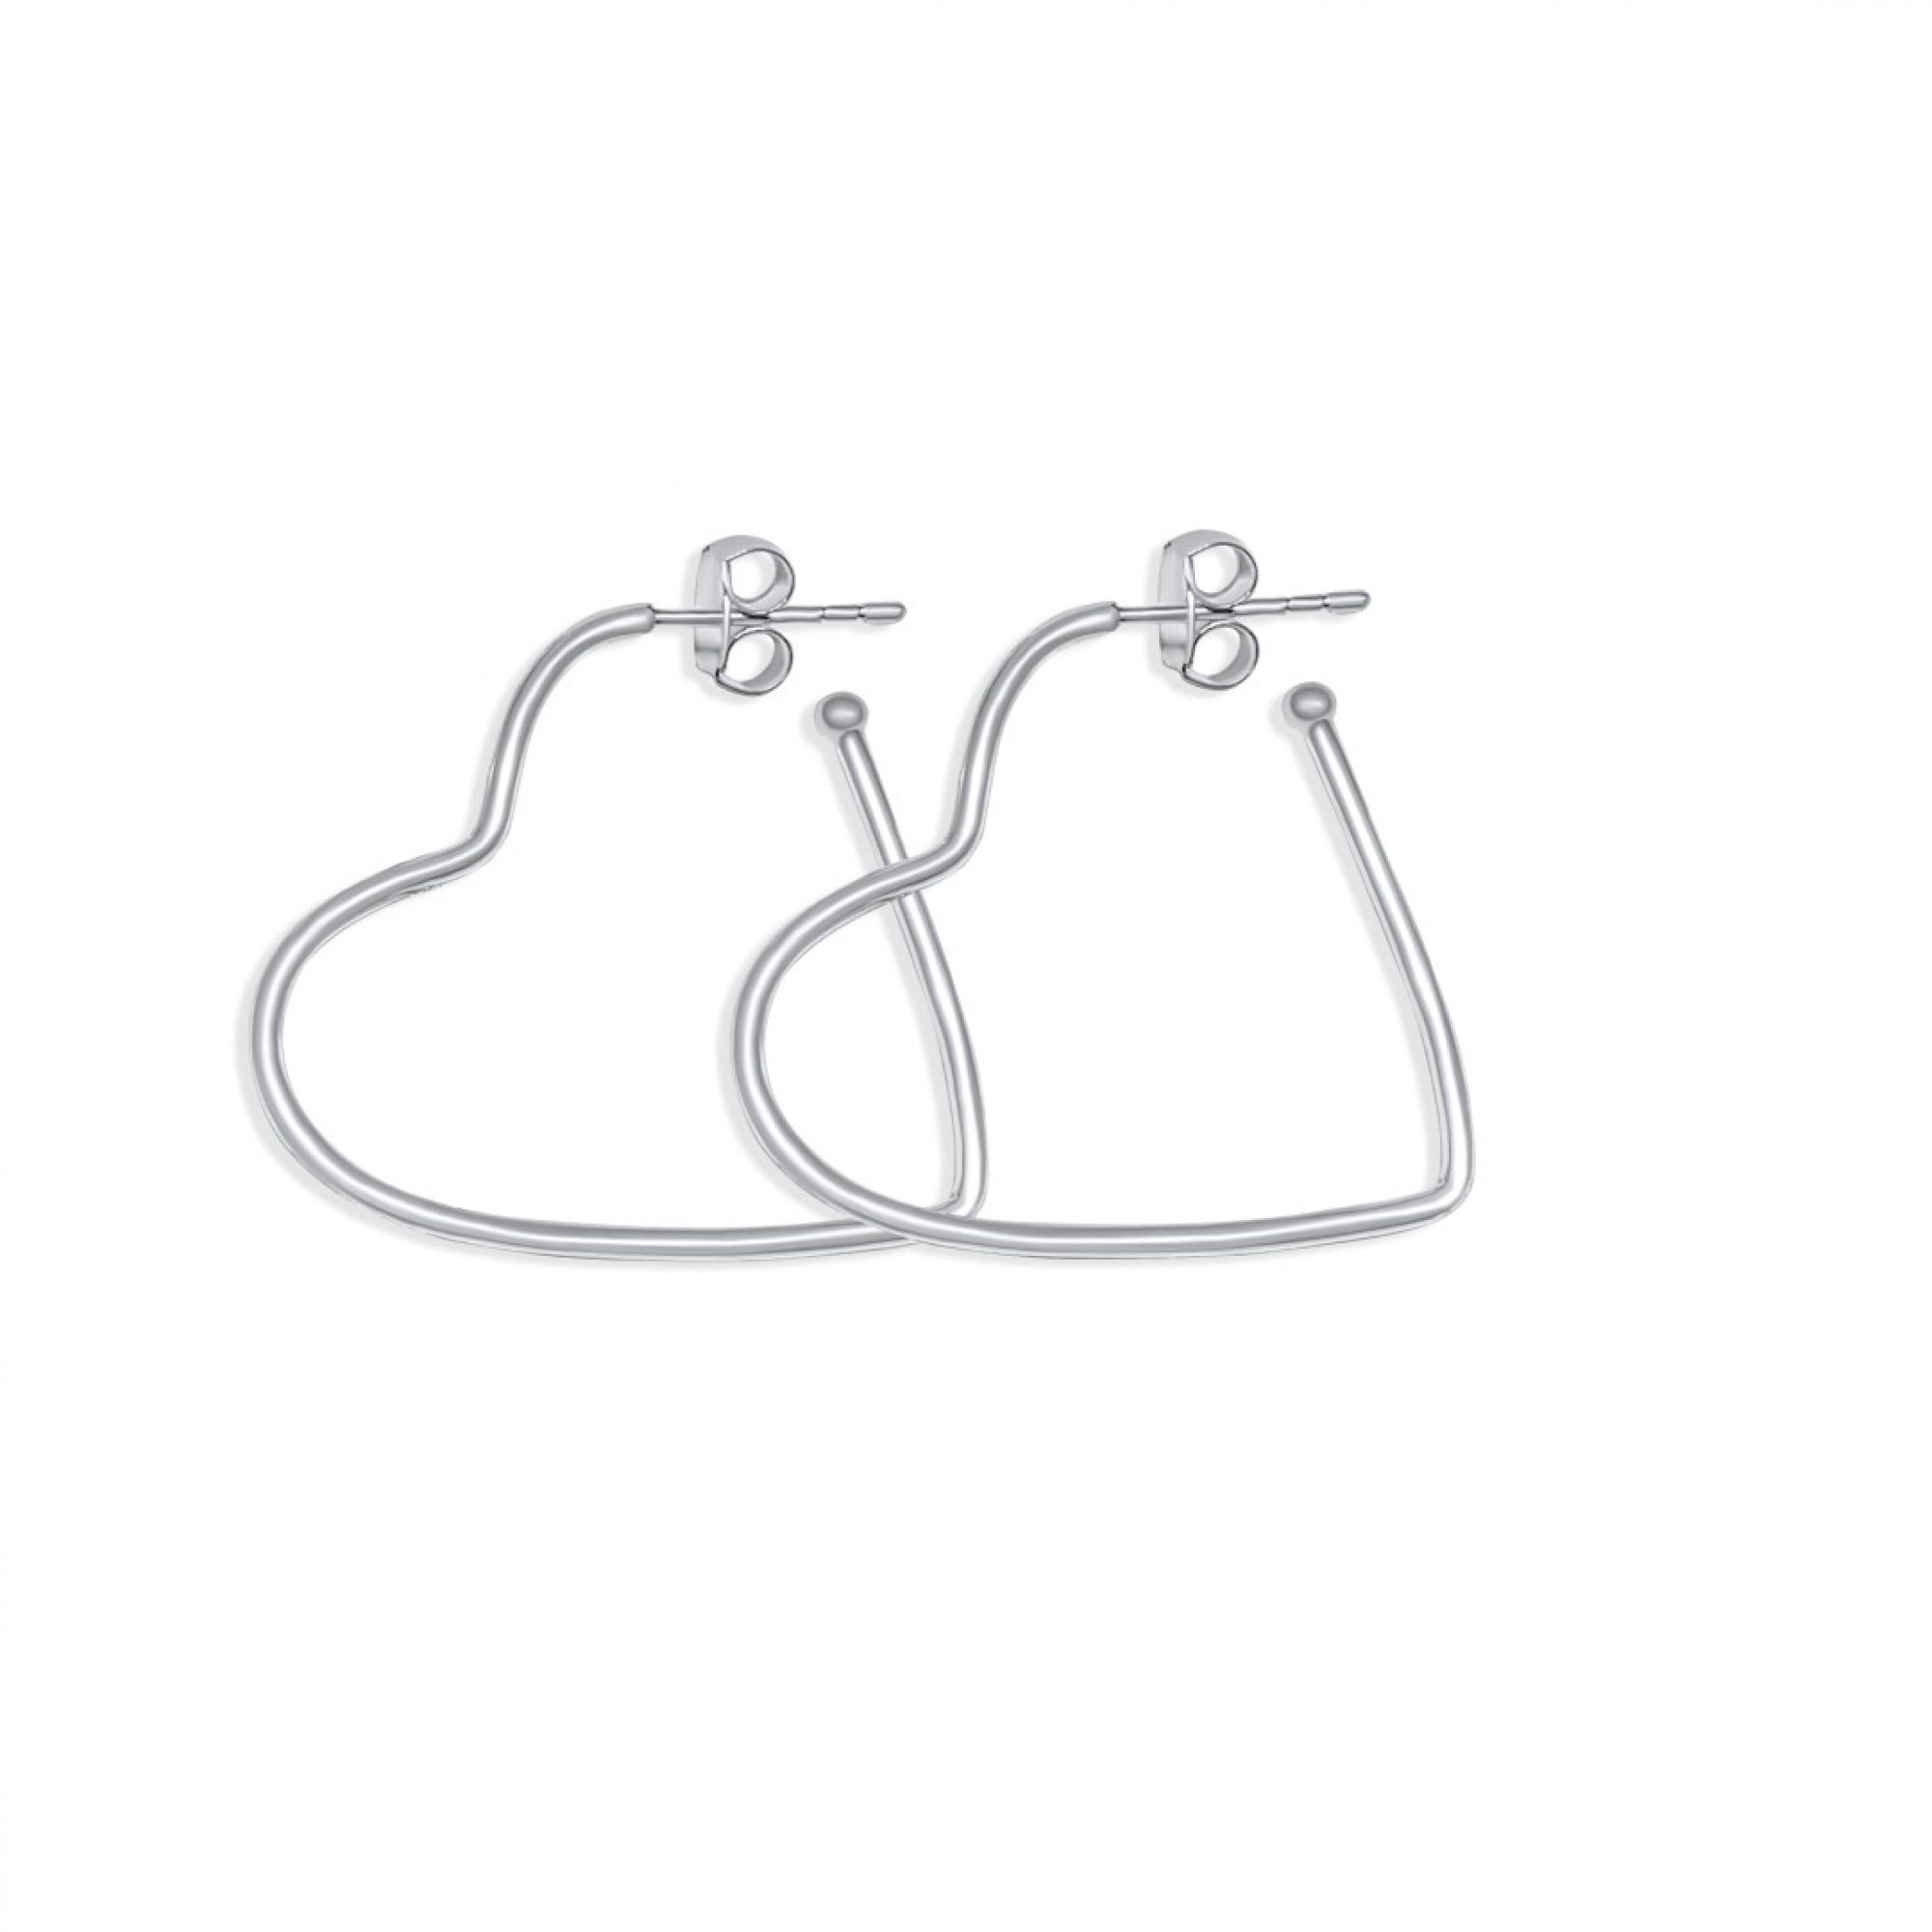 Heart shaped silver hoops